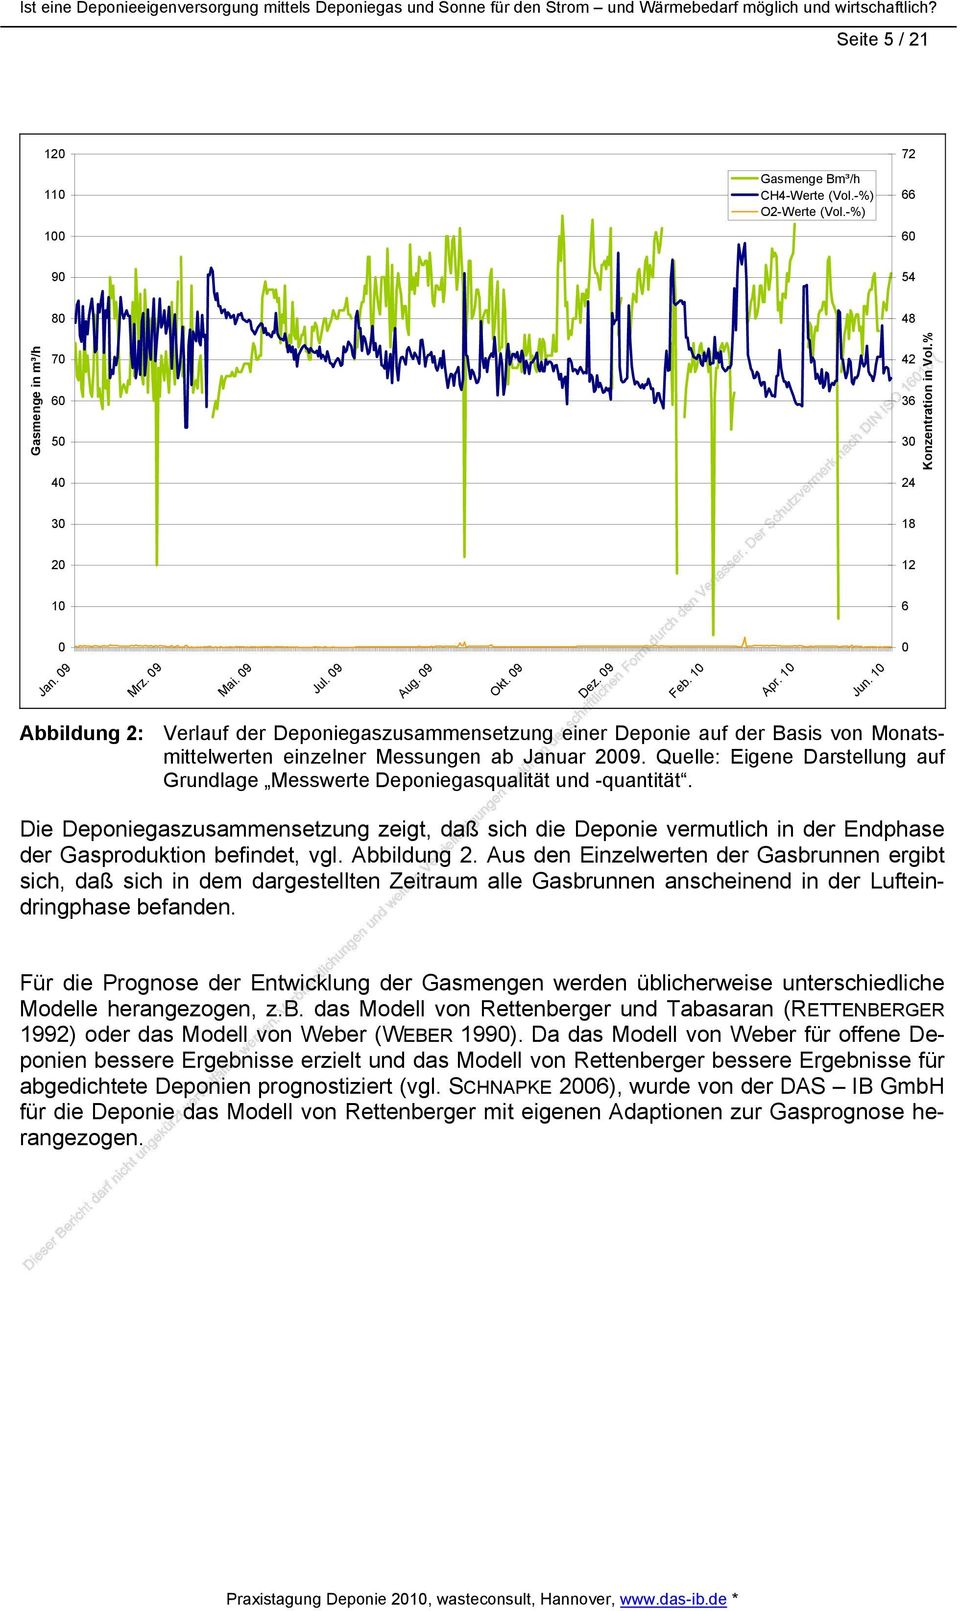 10 Abbildung 2: Verlauf der Deponiegaszusammensetzung einer Deponie auf der Basis von Monatsmittelwerten einzelner Messungen ab Januar 2009.